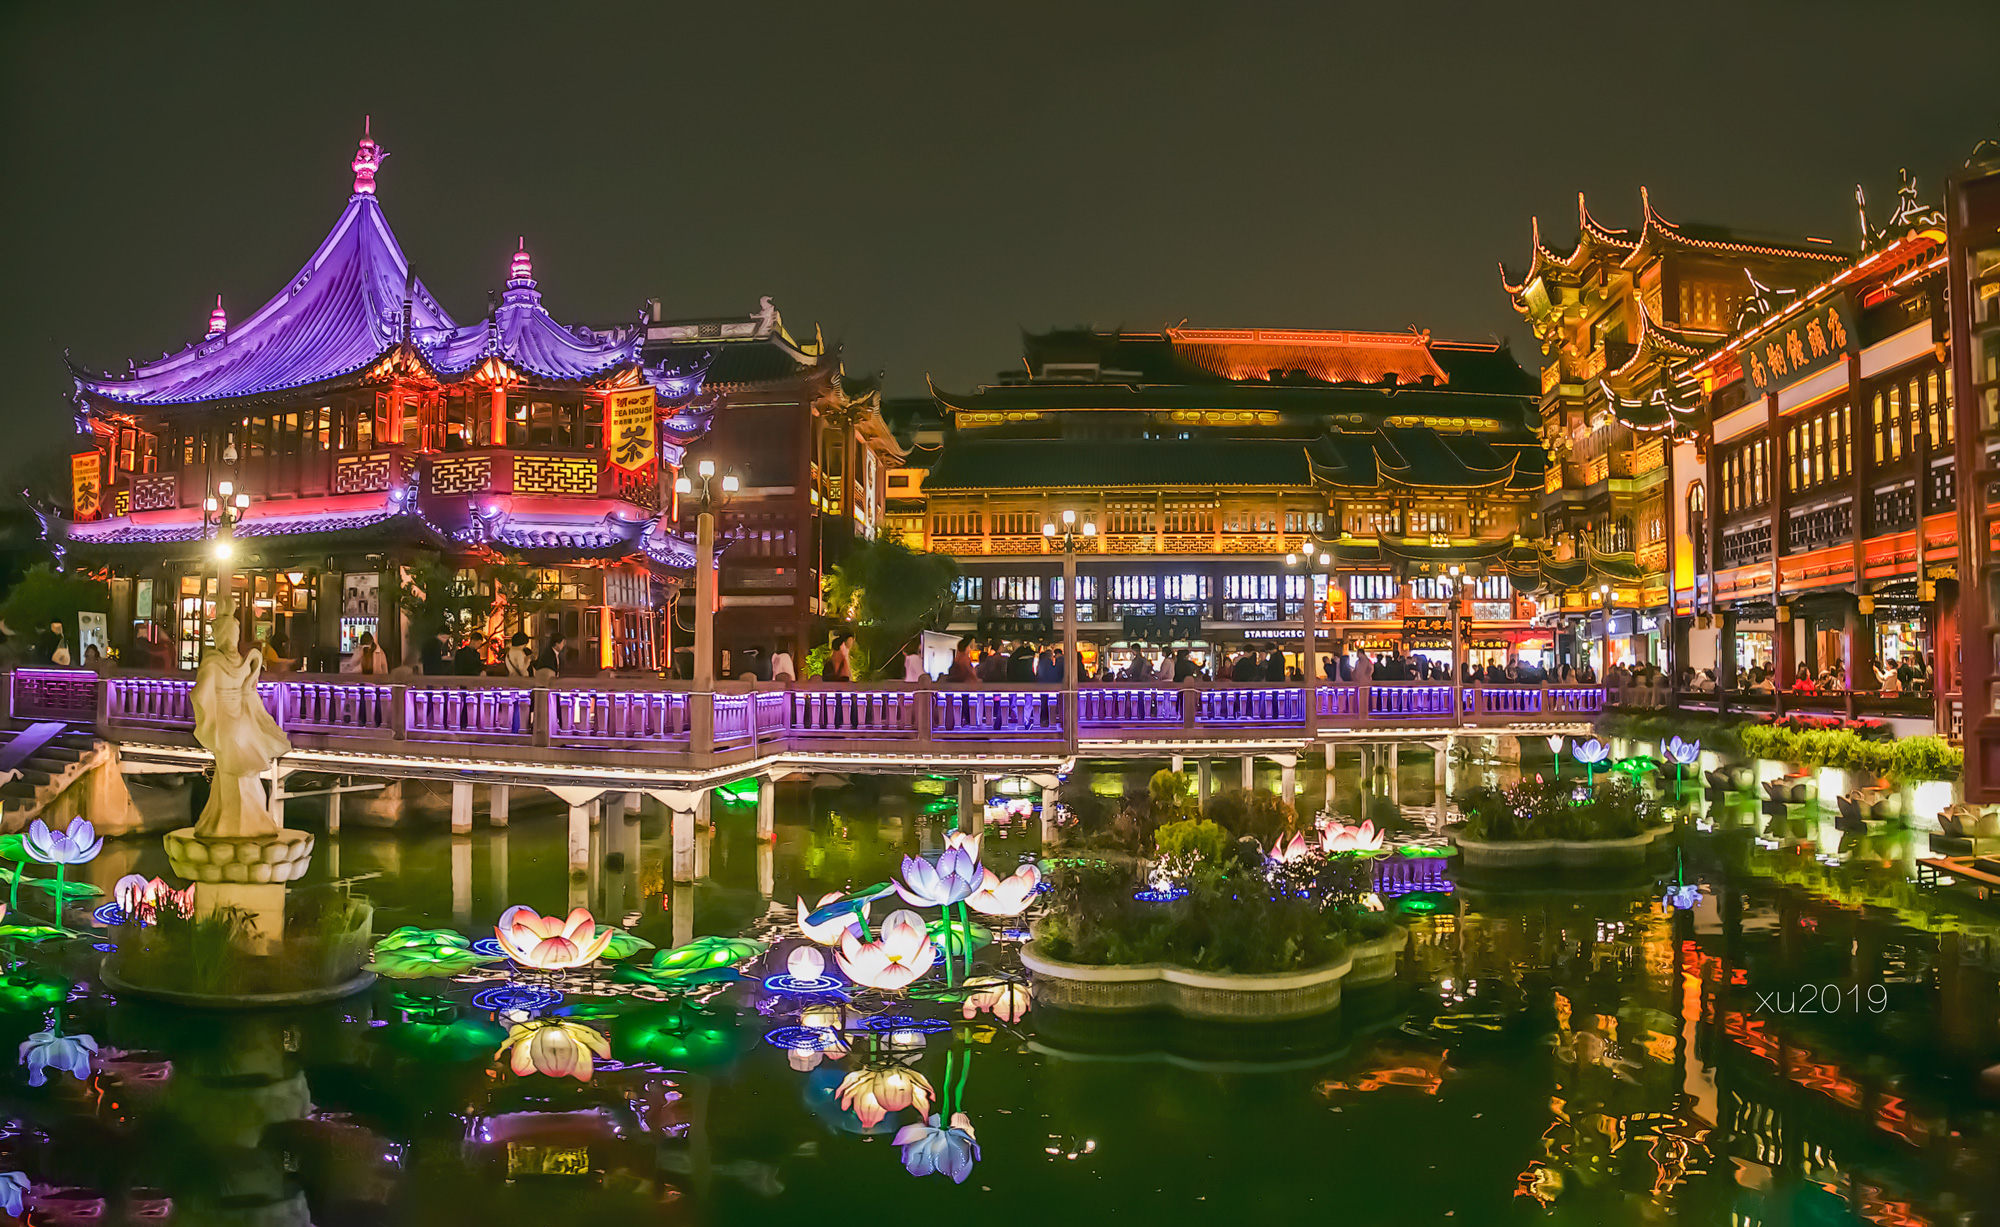 【携程攻略】上海豫园景点,豫园是四川布政使潘允端始建于明代1559年，占地面积30余亩。“豫”有…